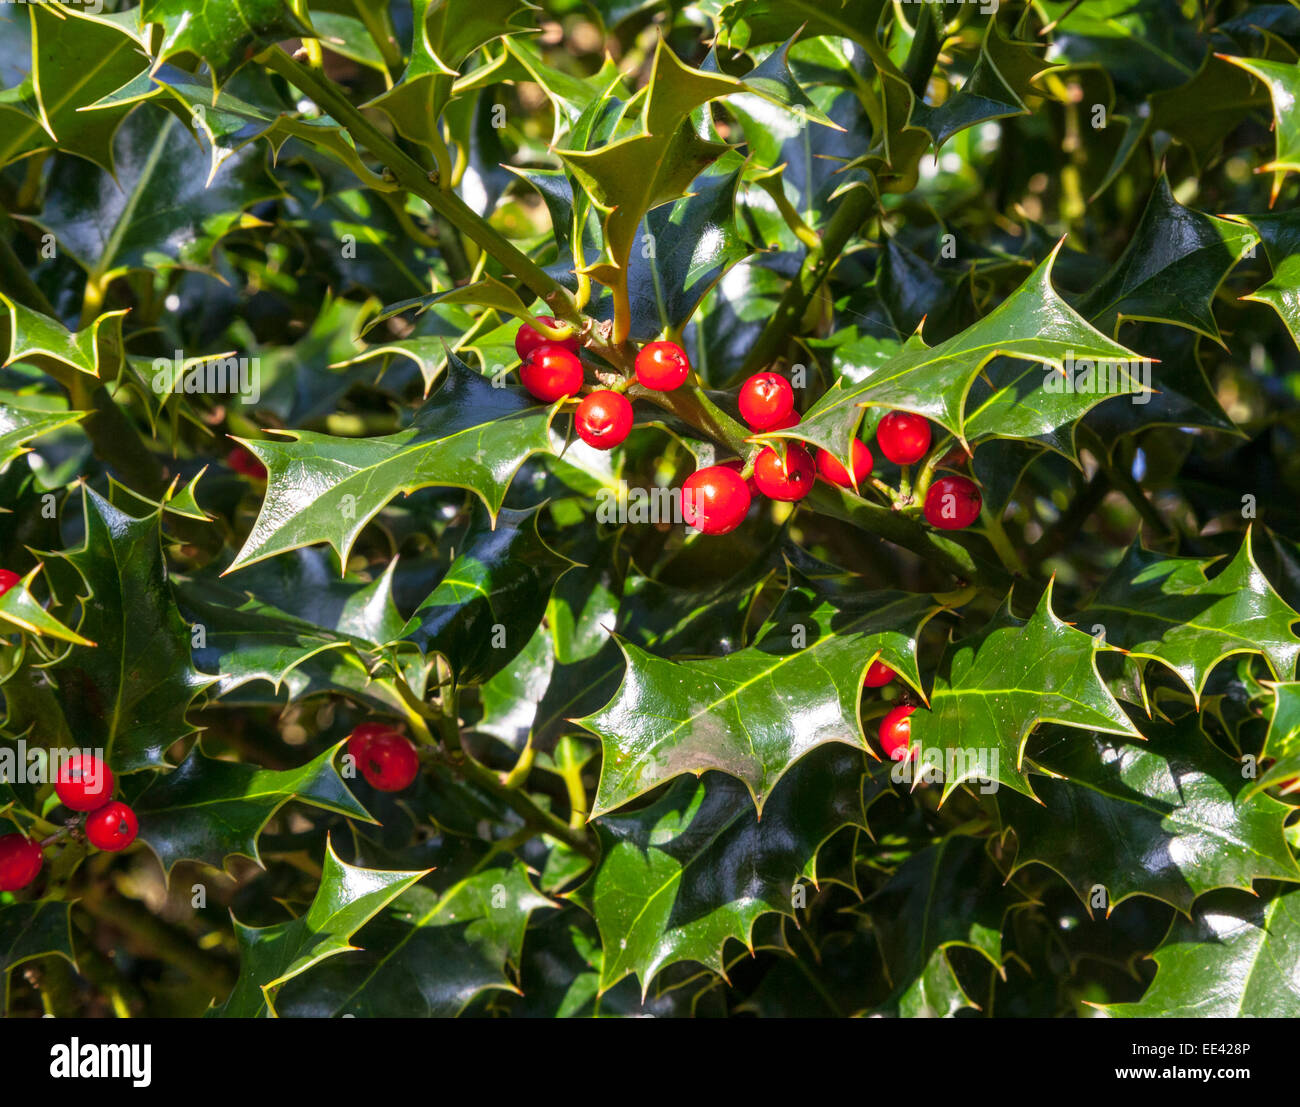 Holly bush Stock Photo